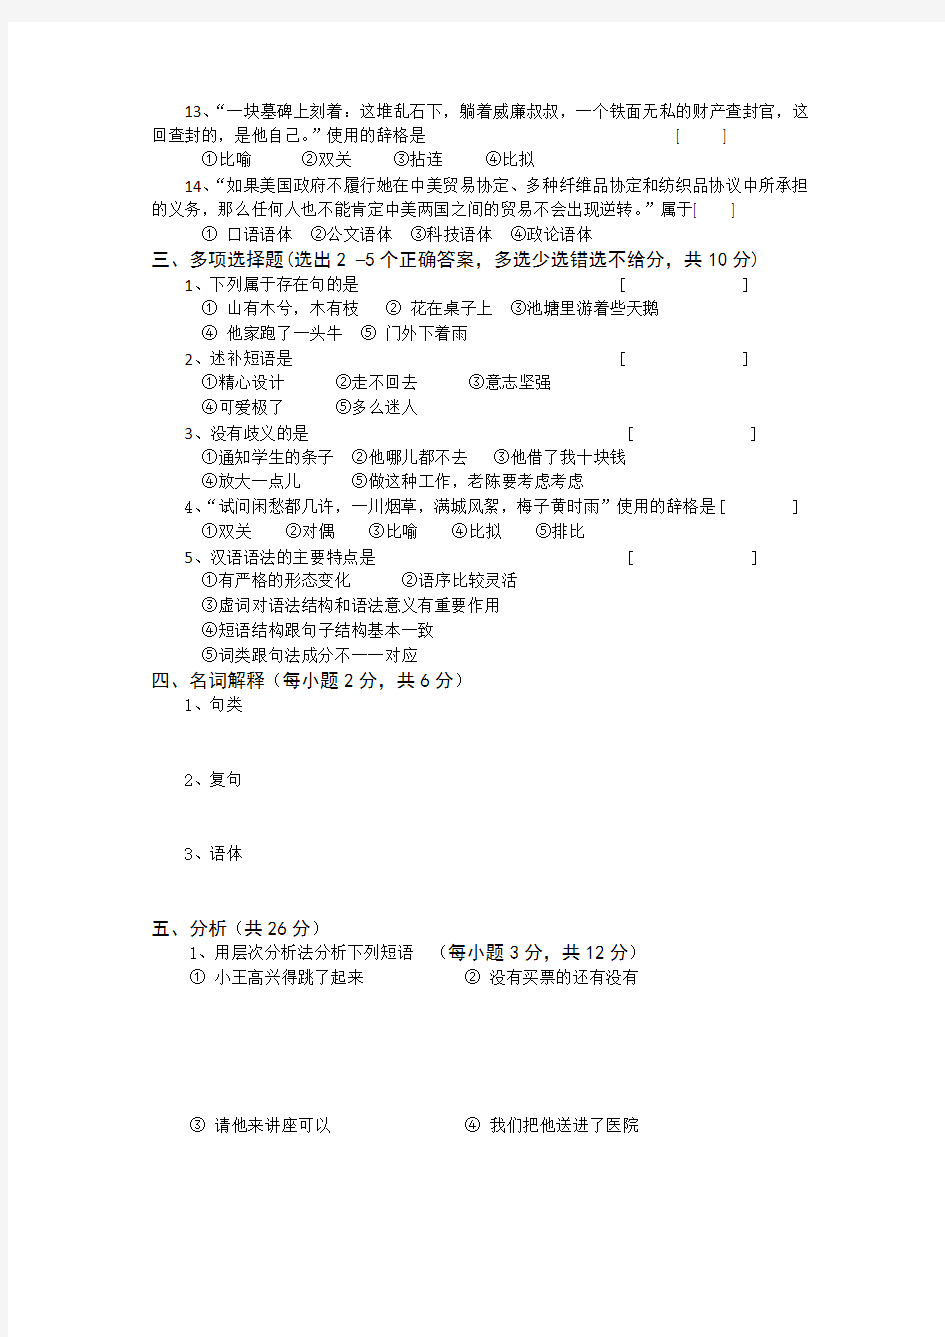 2018年春河北师范大学现代汉语考试题考试卷及答案解析(四)【最新版】